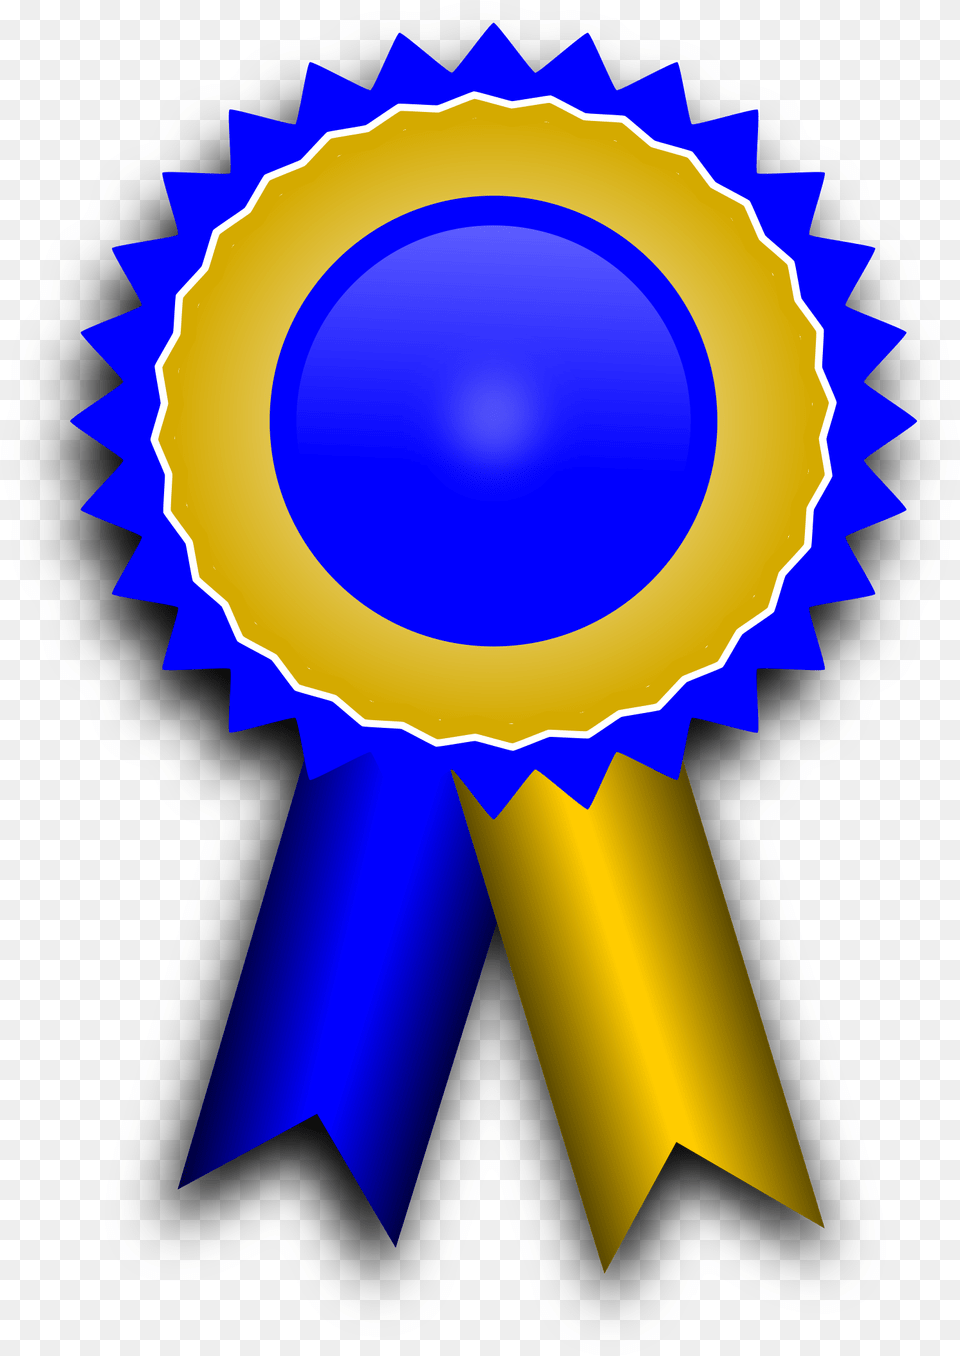 Library Of Award Ribbon Clip Art Files Ribbon For Award, Gold, Badge, Logo, Symbol Free Transparent Png